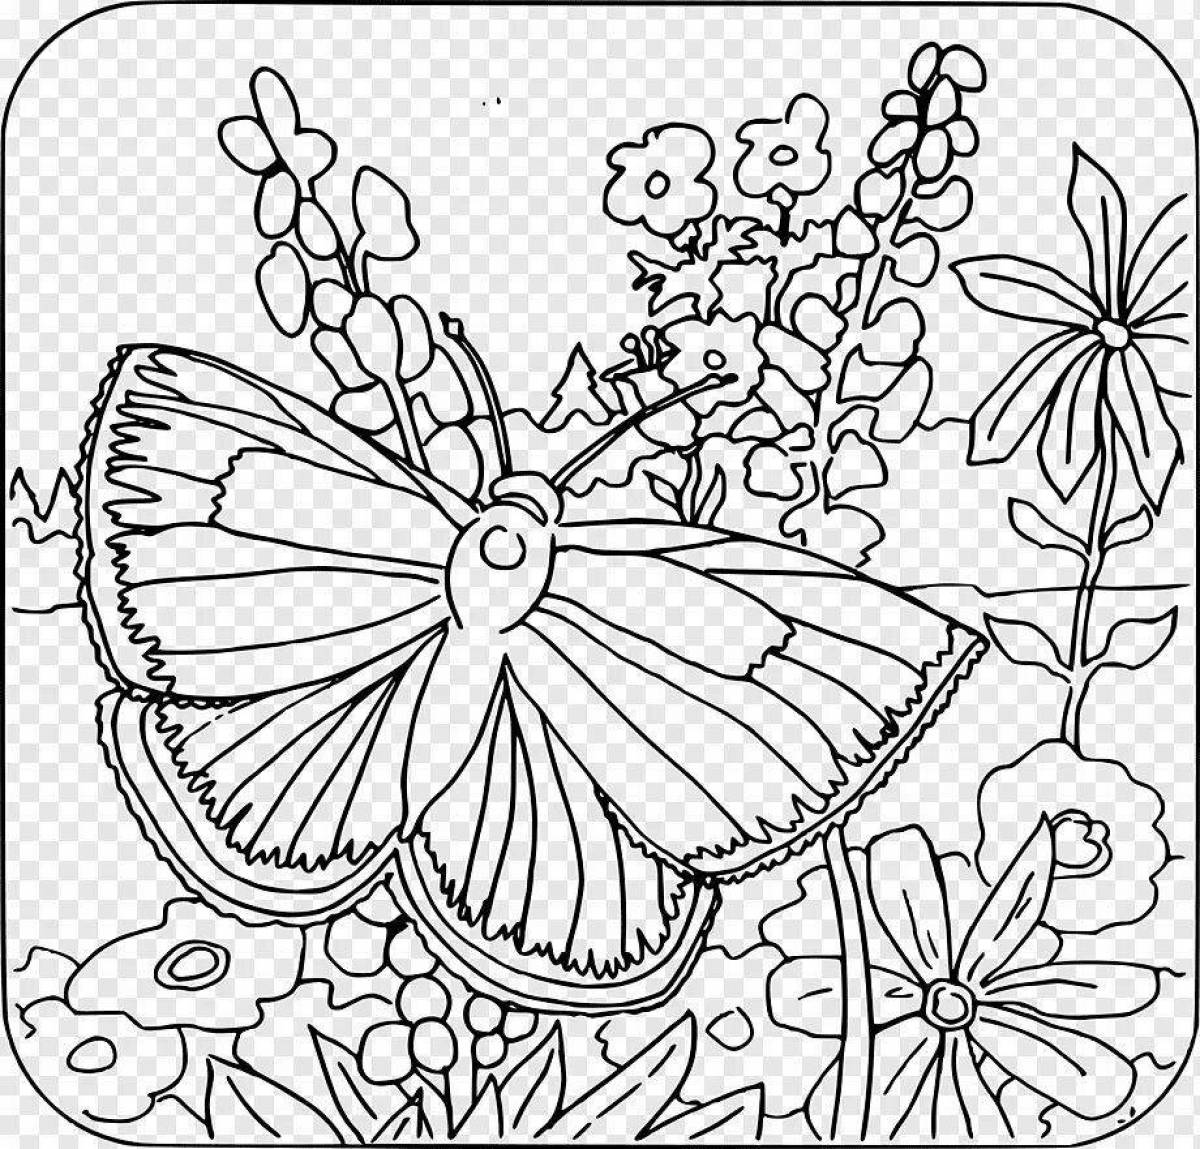 Joyful butterfly on a wild flower